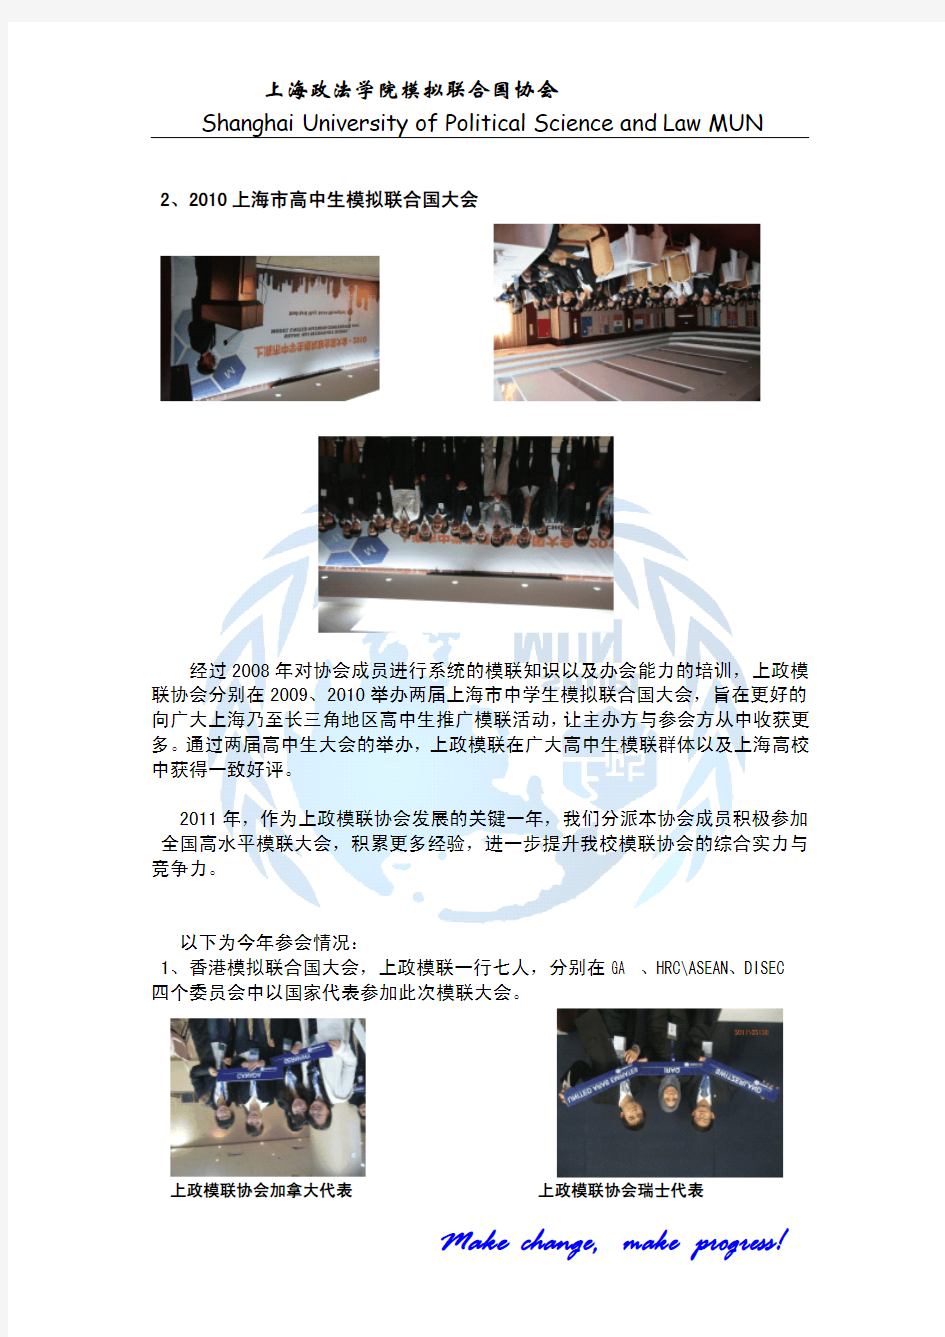 上海政法学院模拟联合国简介